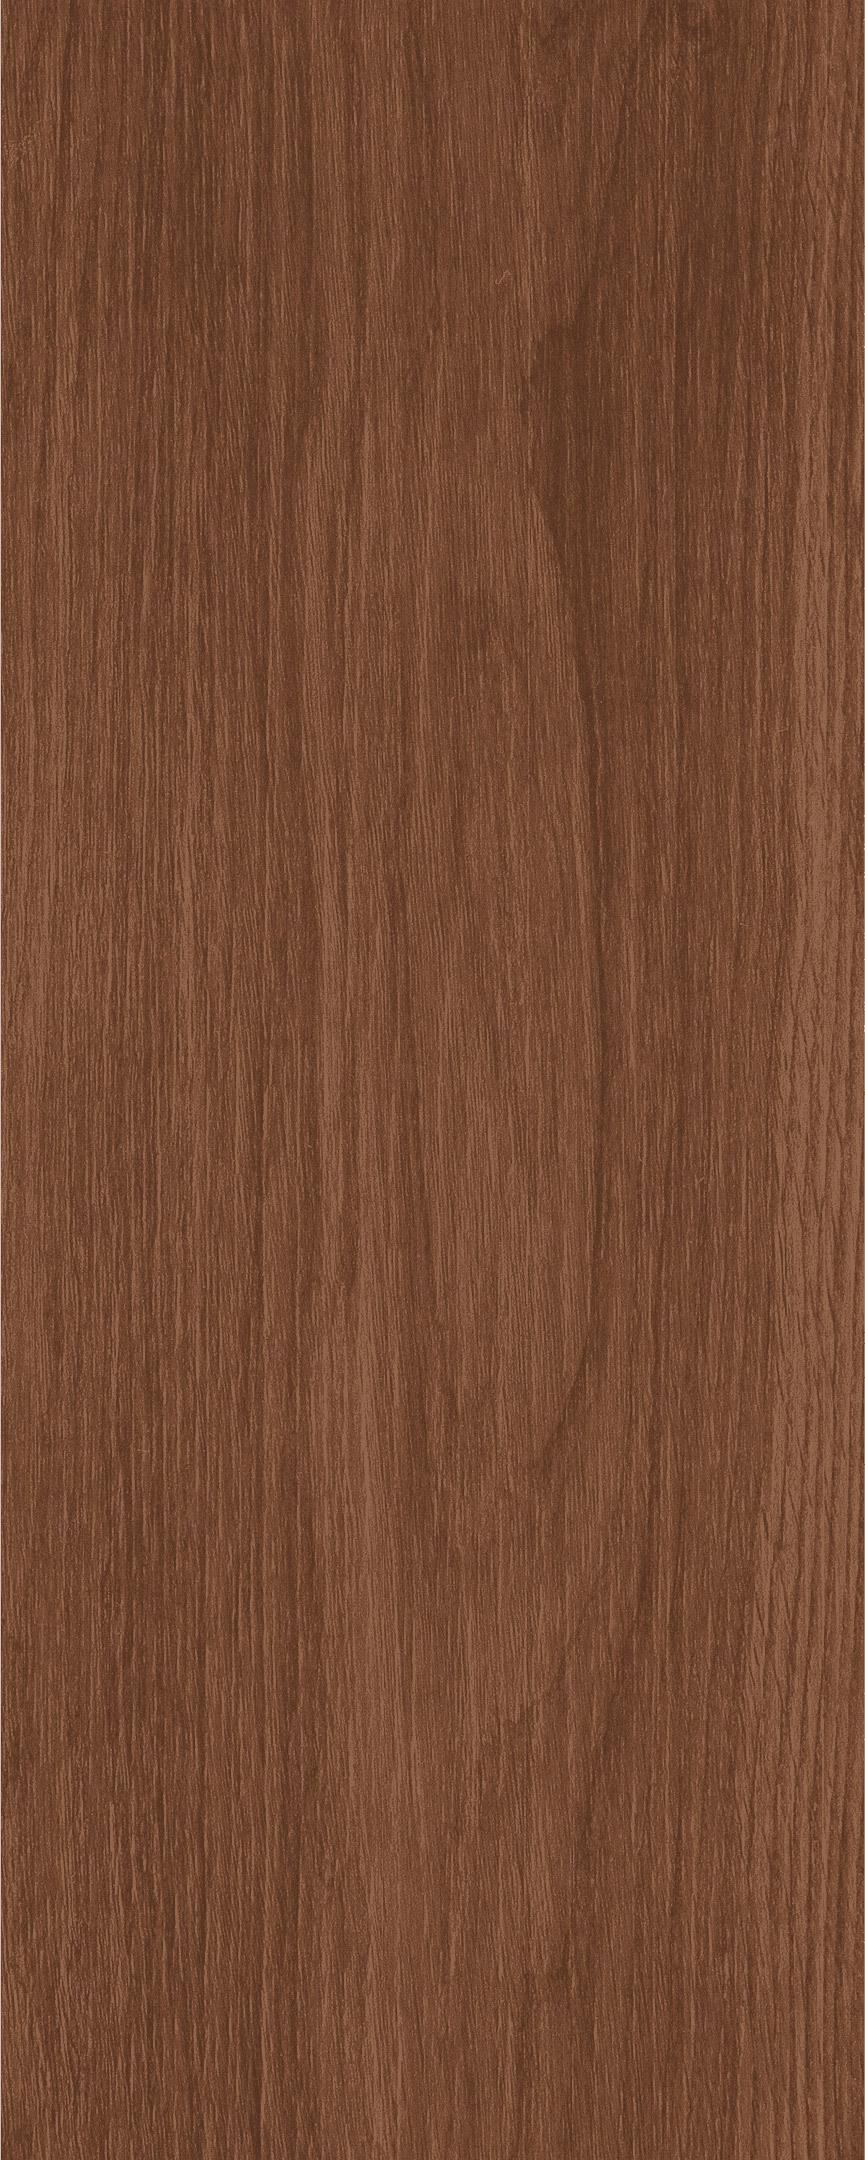 фото Керамогранит kerama marazzi фореста коричневый матовый 50х20 см (14 шт.=1,41 кв.м)